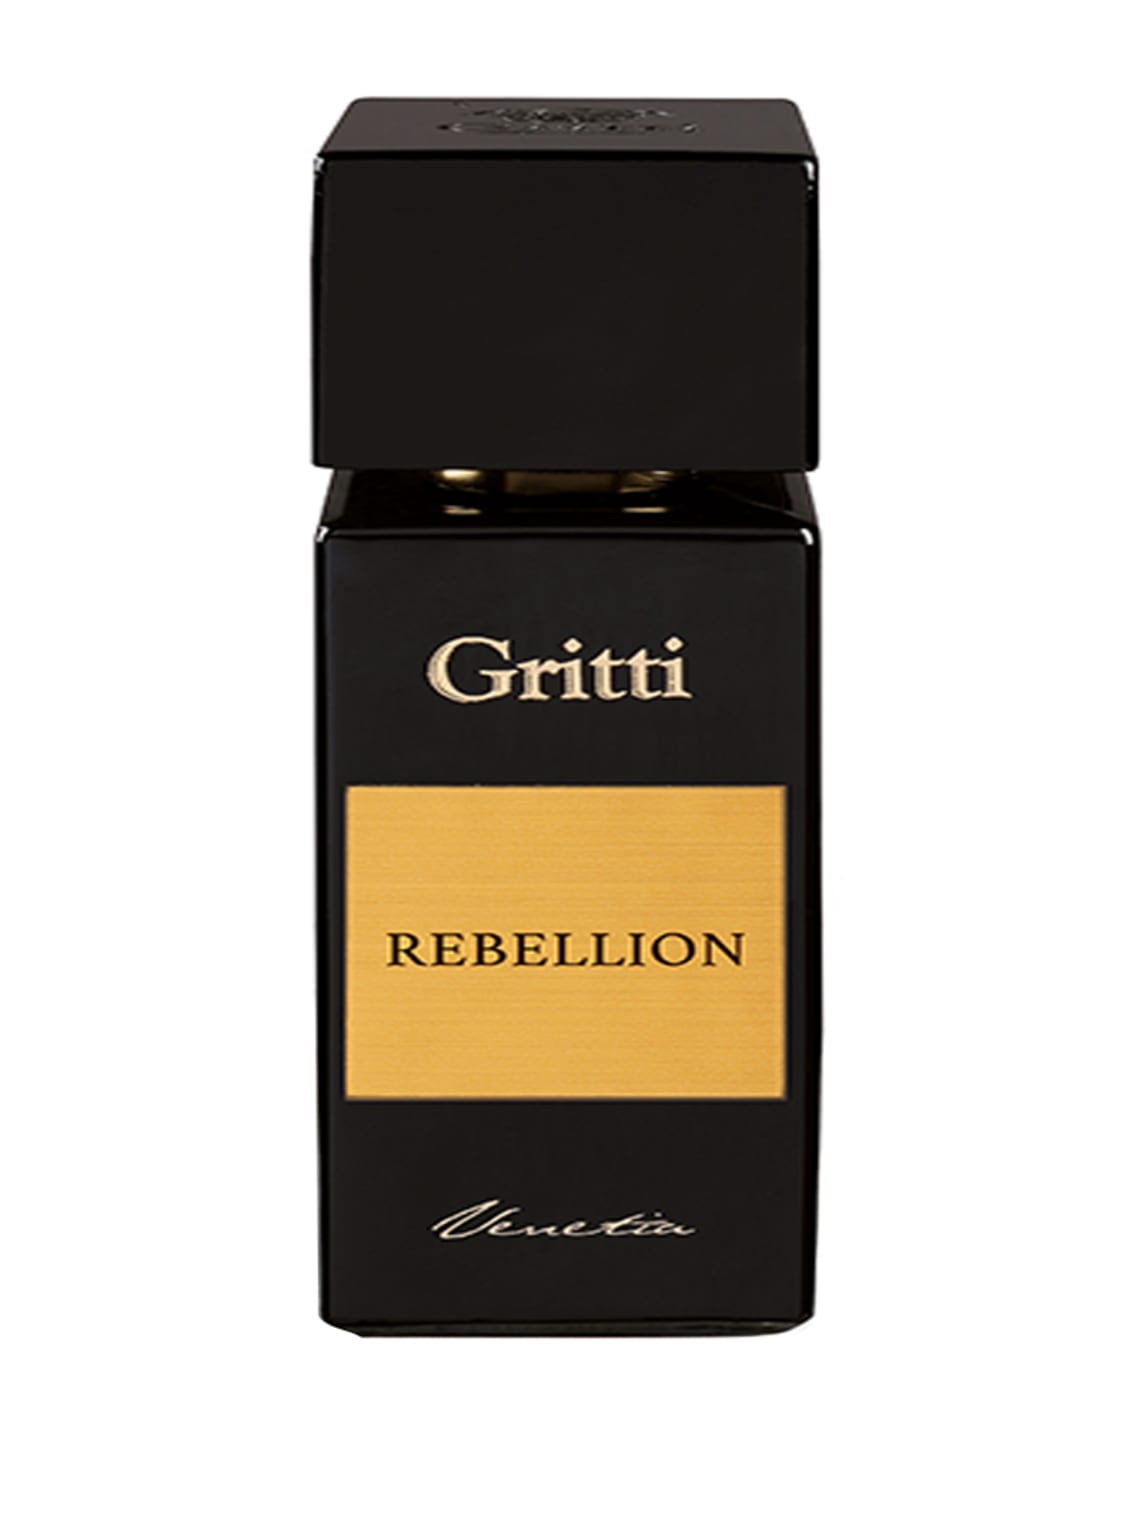 Gritti Rebellion Eau de Parfum 100 ml von Gritti